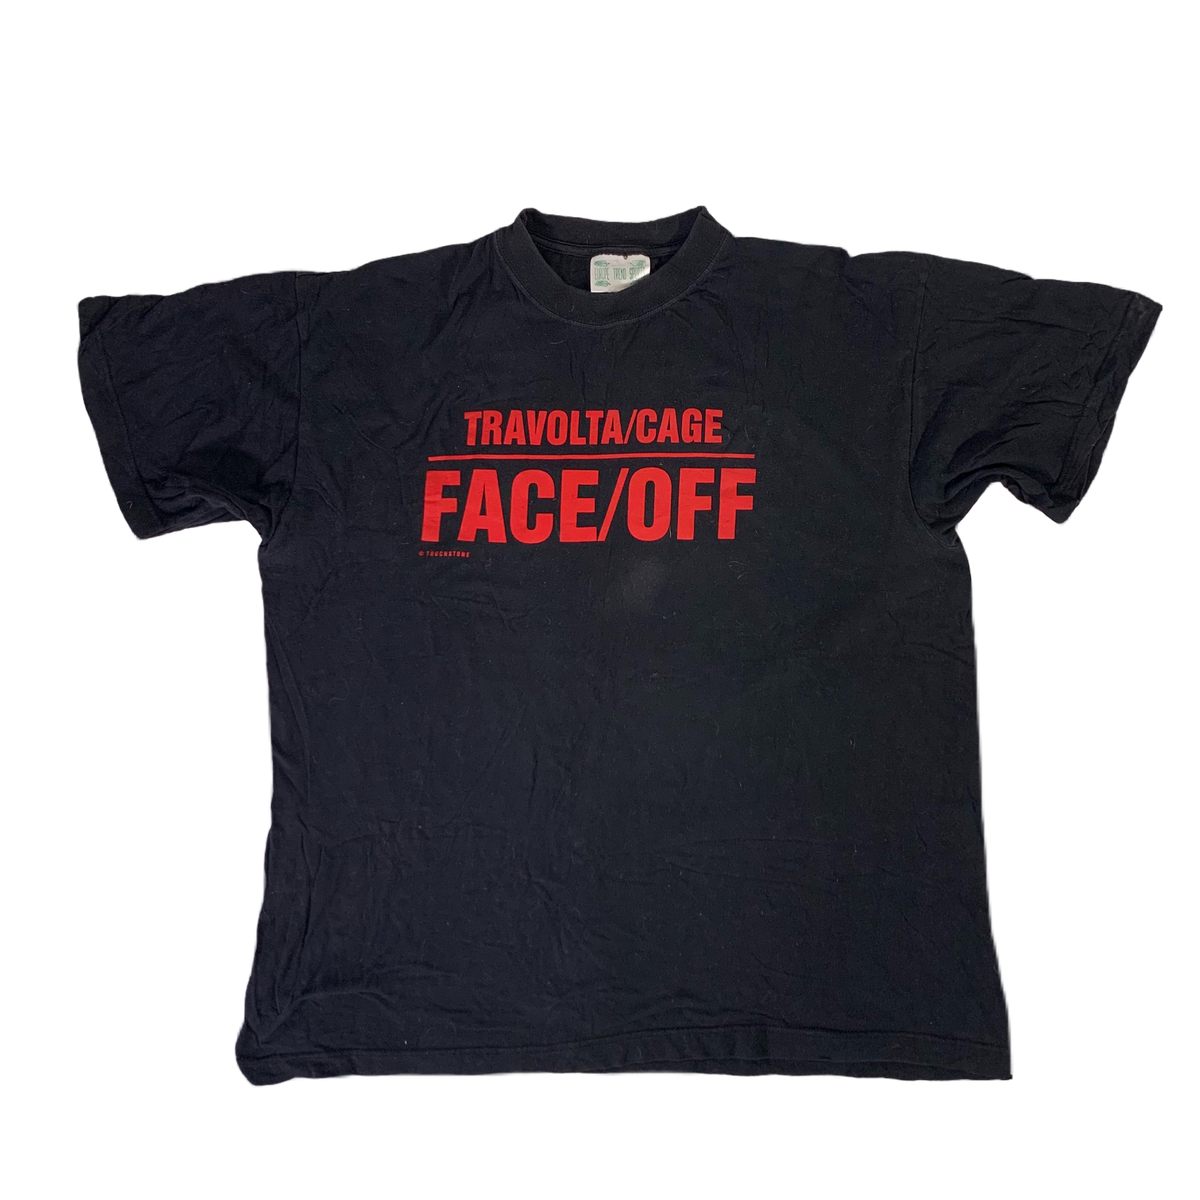 Vintage Face/Off &quot;Travolta Cage&quot; Promo T-Shirt